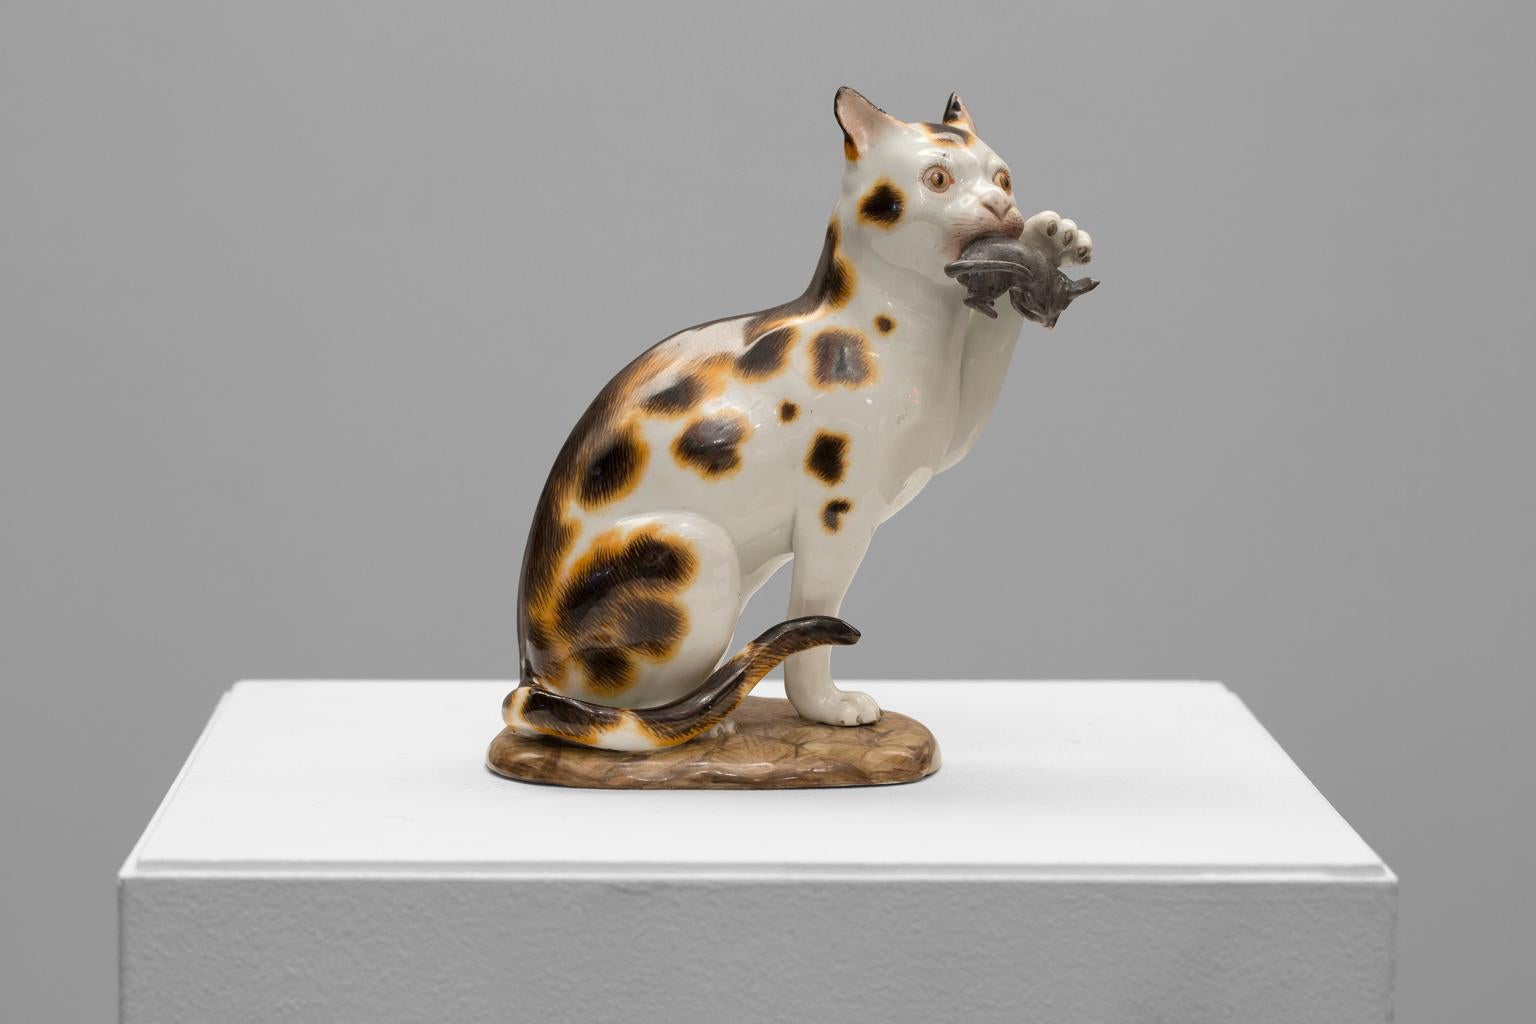 Meissen Porcelain (Manufacturer) Figurative Sculpture - Charming Meissen Porcelain Cat and Mouse Figurine, Circa 19th Century